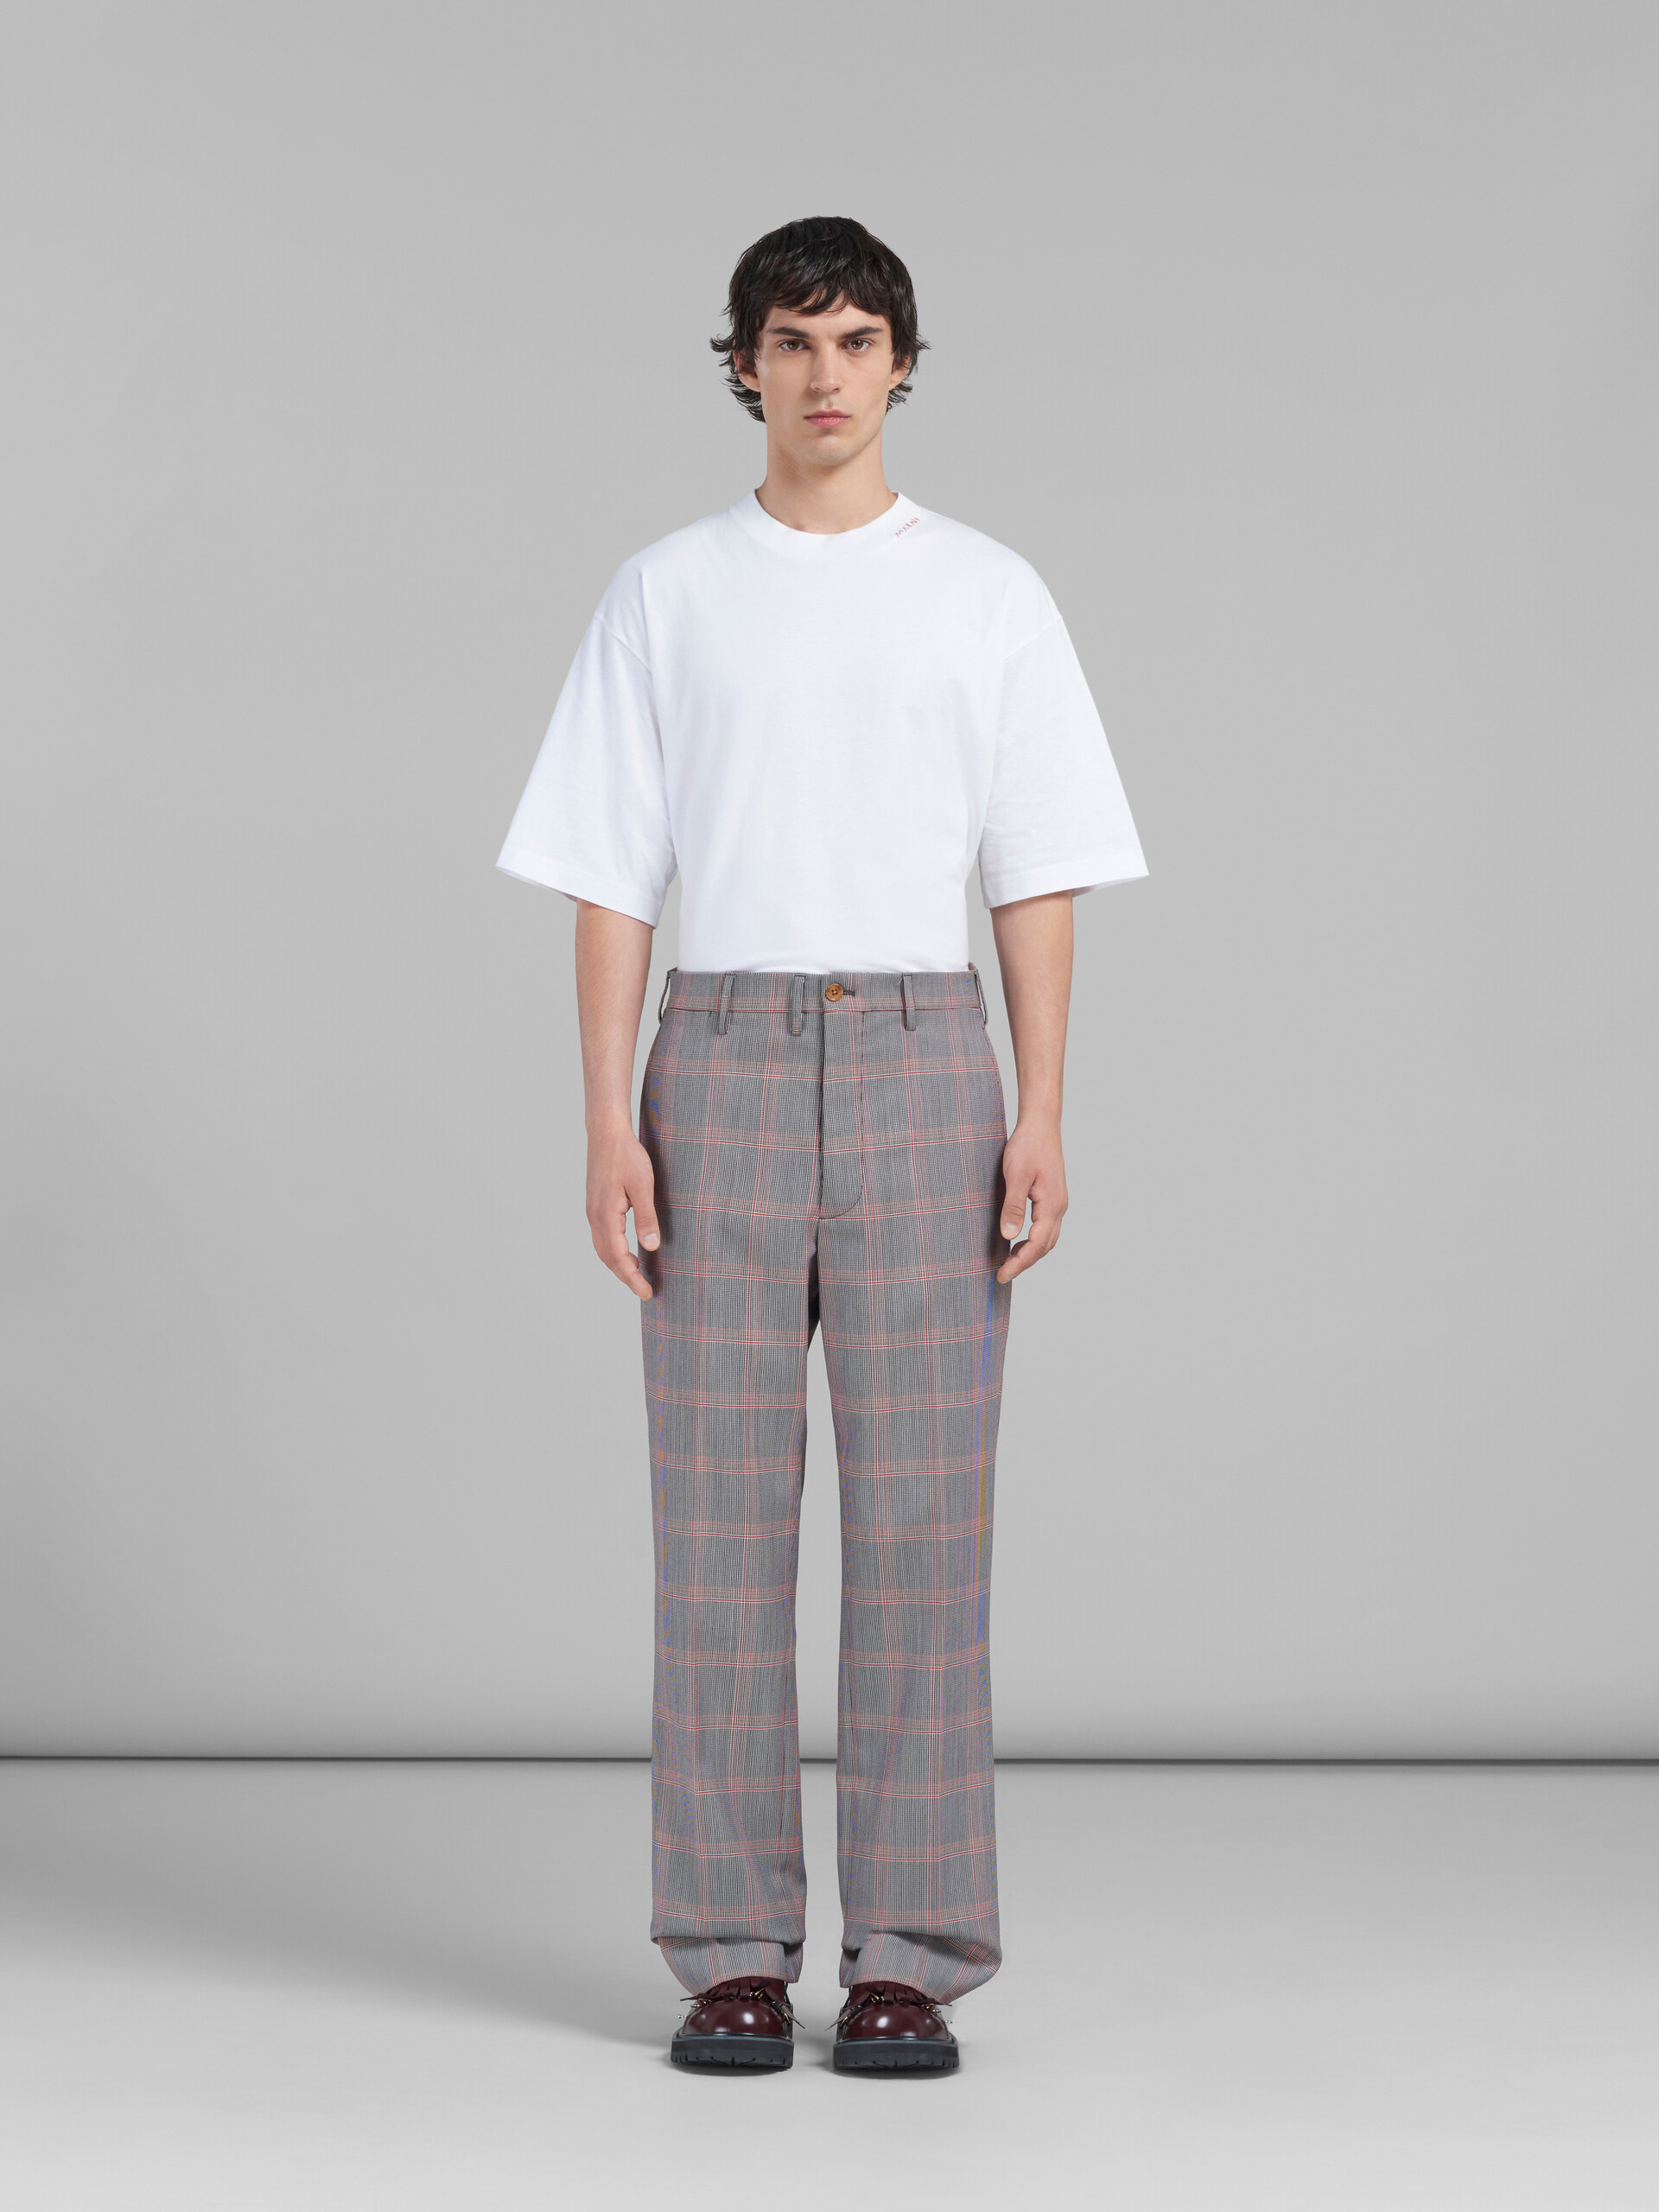 Pantalón chino naranja de lana técnica a cuadros - Pantalones - Image 2